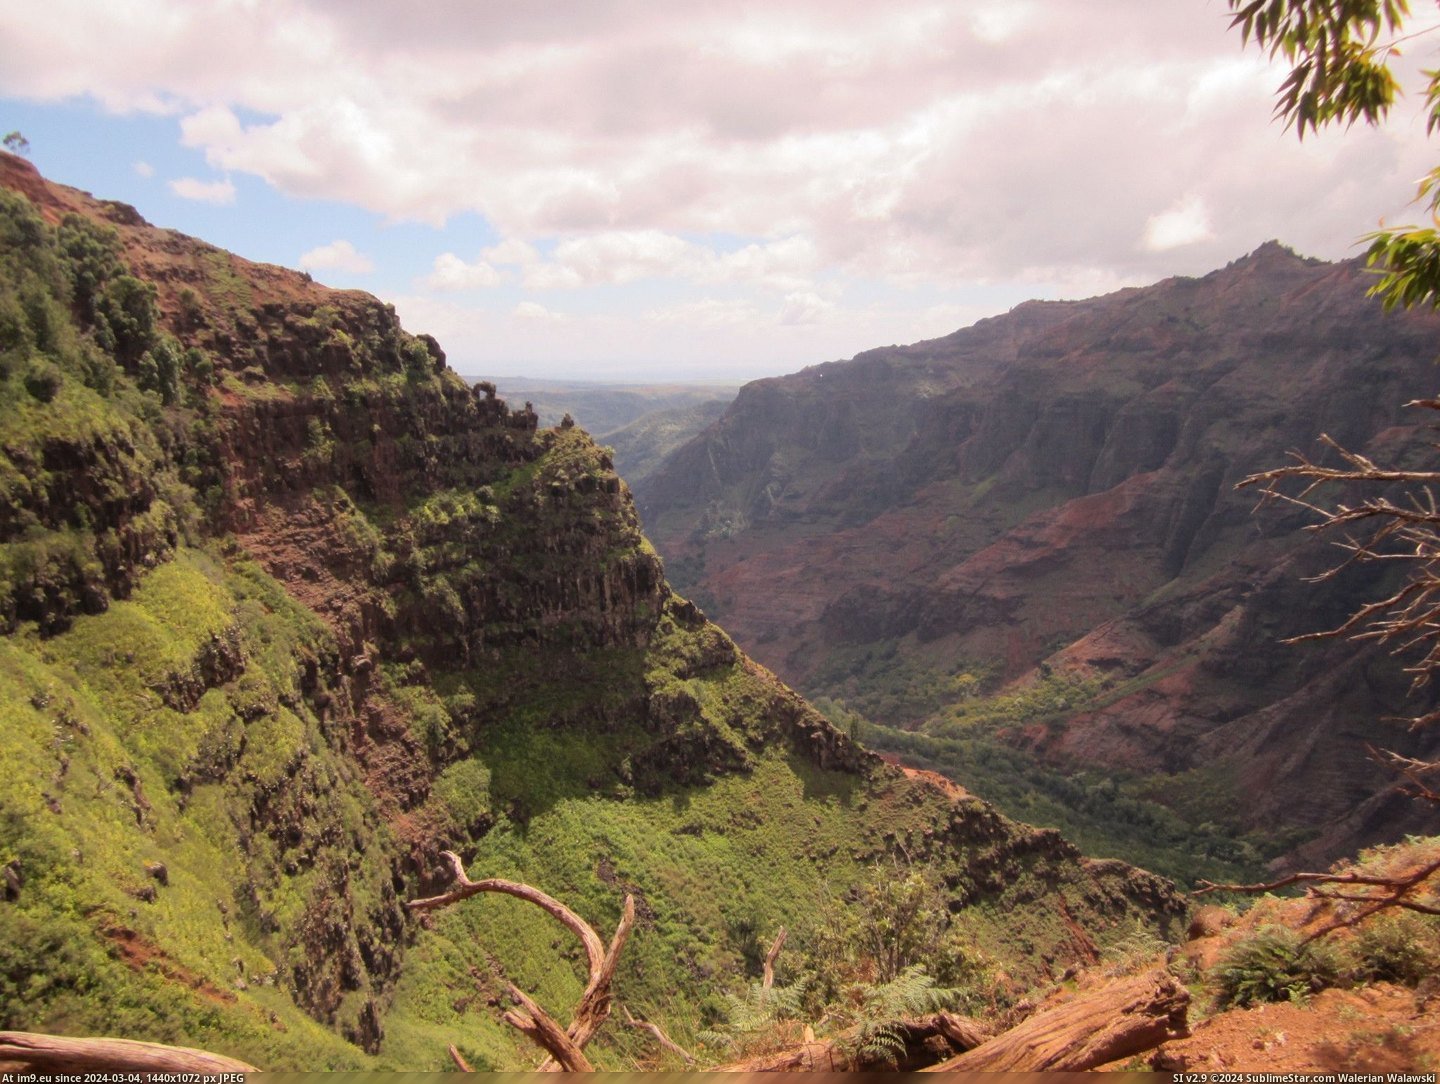 #Canyon #Hawaii #Waimea #2048x1536 #Kauai [Earthporn] Waimea Canyon, Kauai, Hawaii [OC] [2048x1536] Pic. (Изображение из альбом My r/EARTHPORN favs))